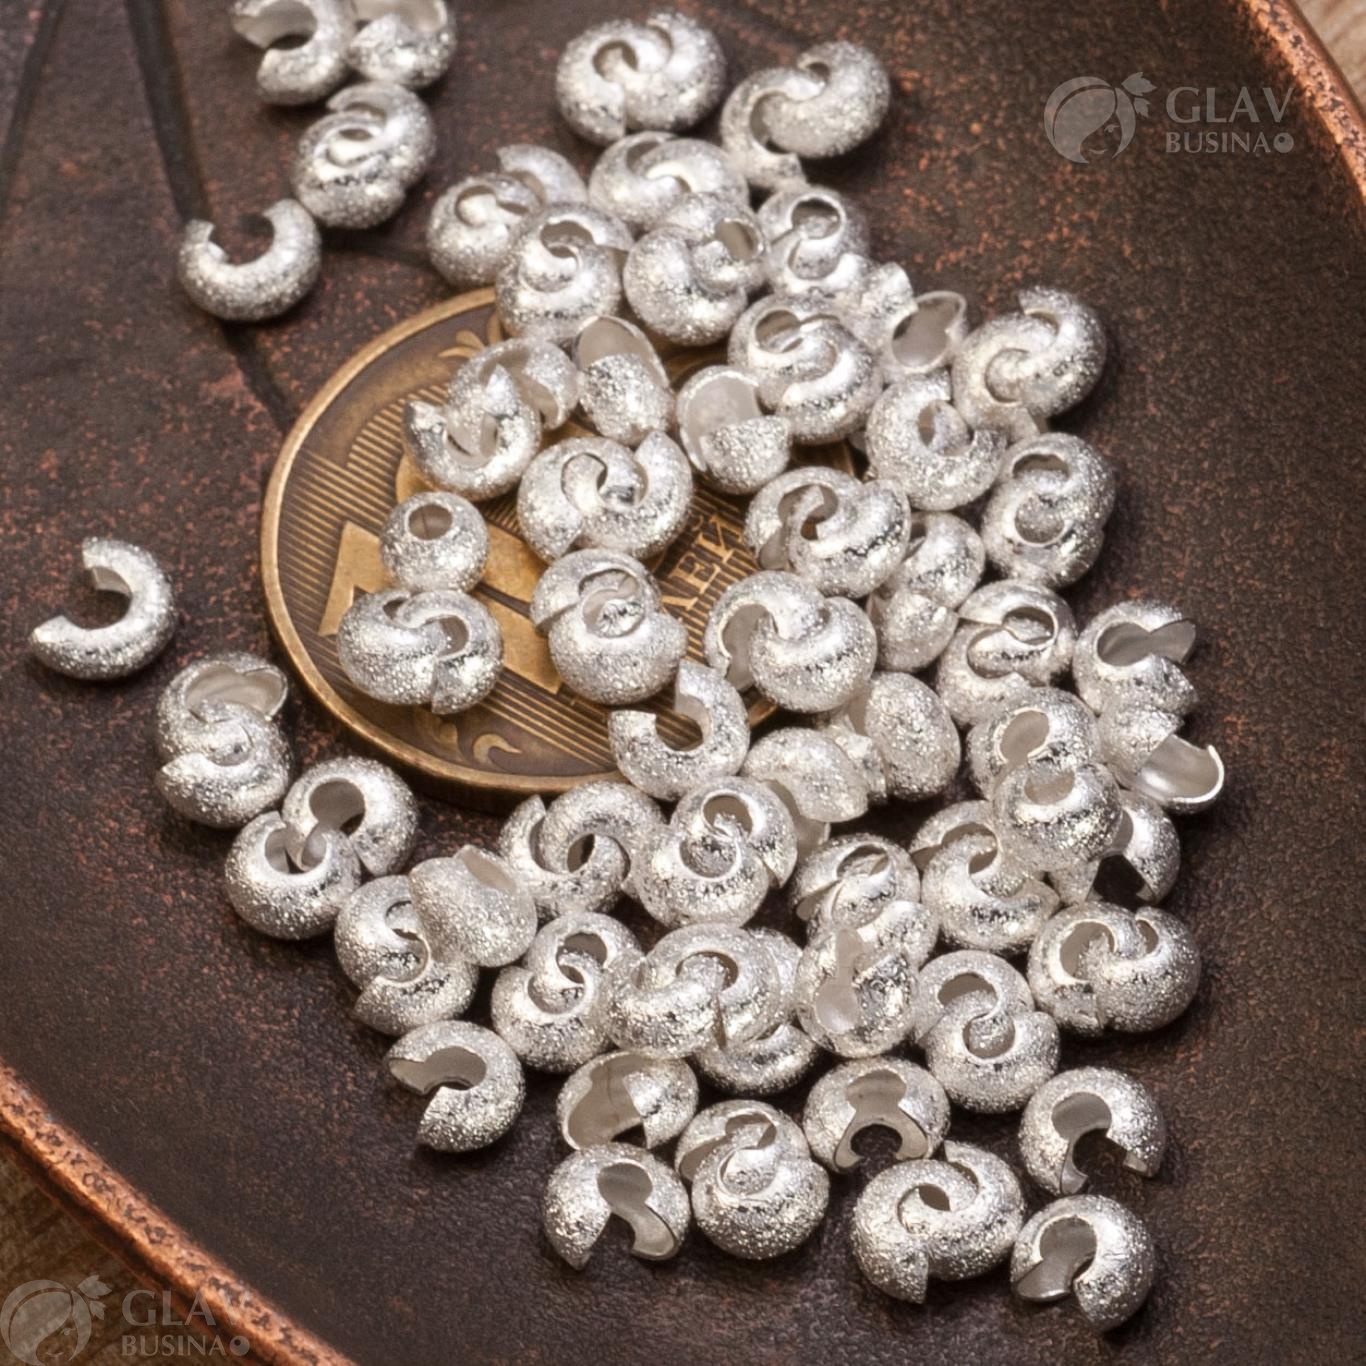 Шапочки для кримпов с эффектом звездной пыли (сияния), р-р 4.5х3мм, латунь, цвет серебро - надежный аксессуар для создания уникальных украшений.